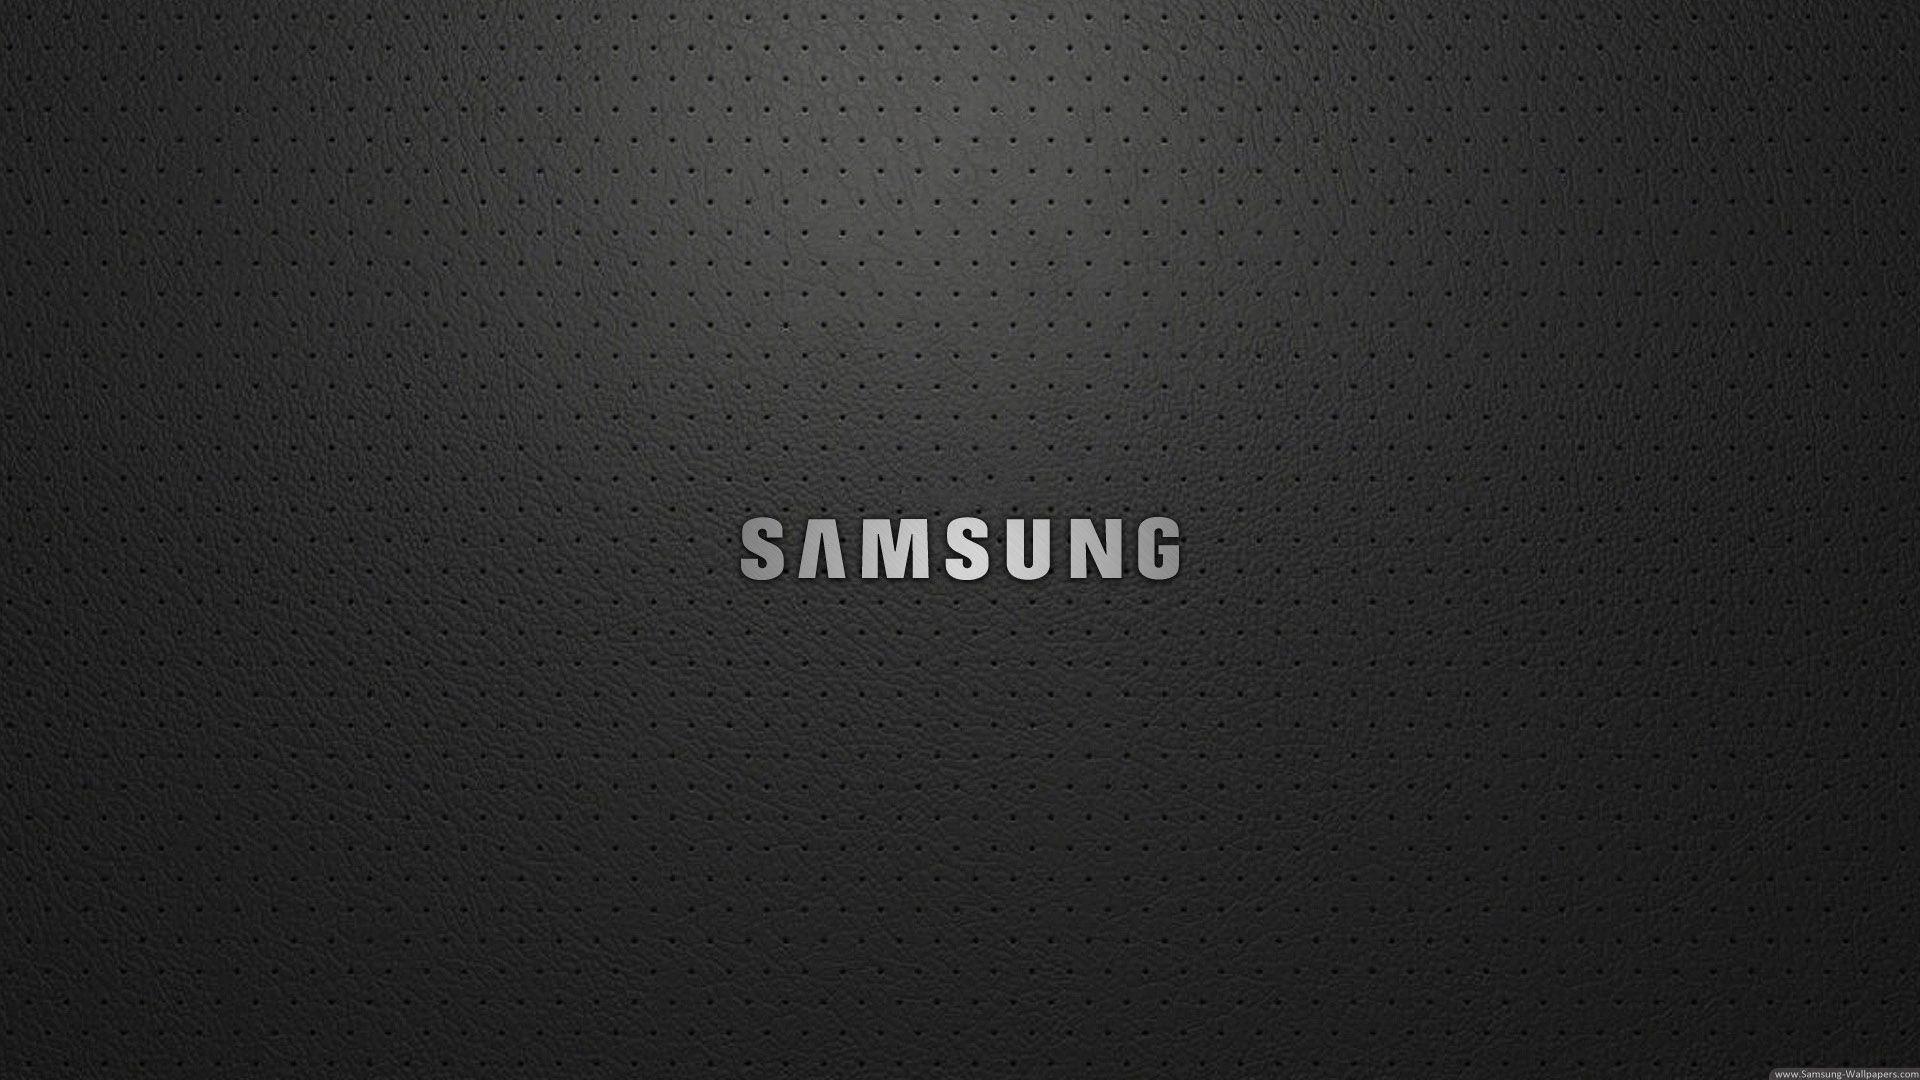 Samsung 4K Black Wallpapers - Top Free Samsung 4K Black Backgrounds